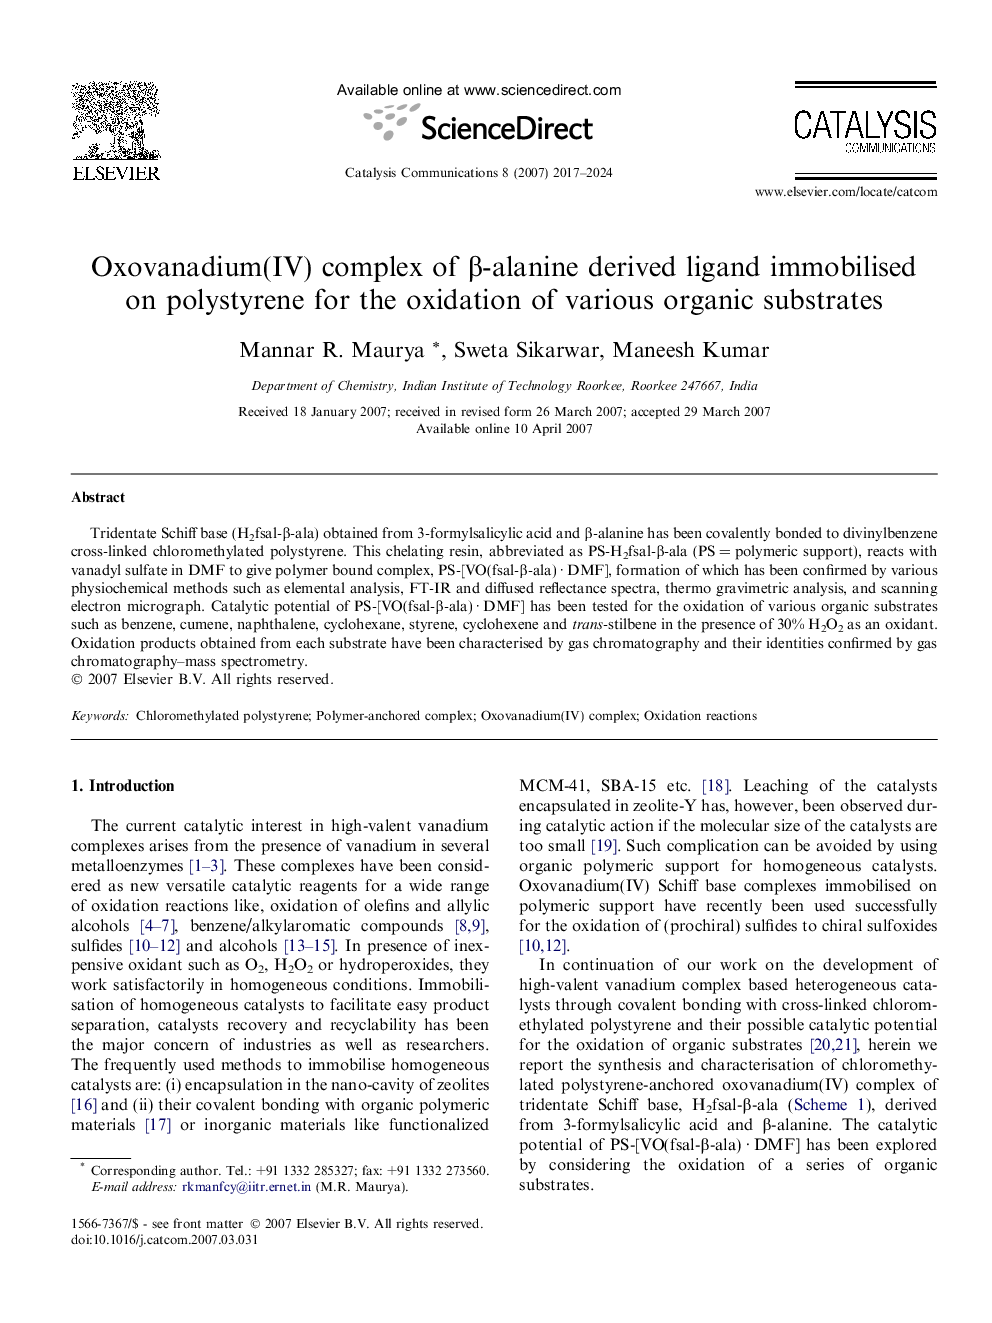 ترکیب (Oxovanadium (IV از β-آلانین لیگاند مشتق شده پلی استایرن بی حرکت برای اکسیداسیون لایه های آلی مختلف 